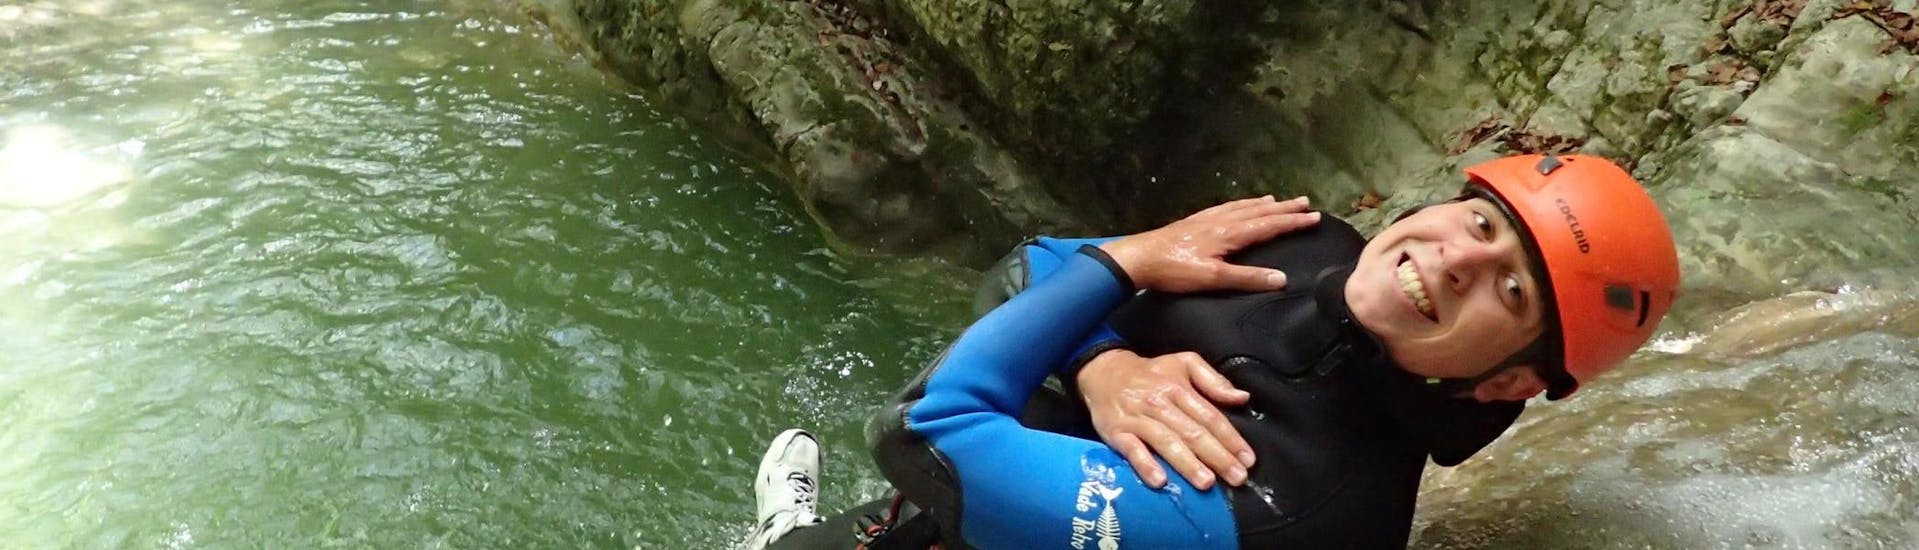 Einer der Teilnehmer der Canyoning-Tour "Discovery" - Canyon d'Angon von Térreo Canyoning rutscht eine natürliche Wasserrutsche hinunter.